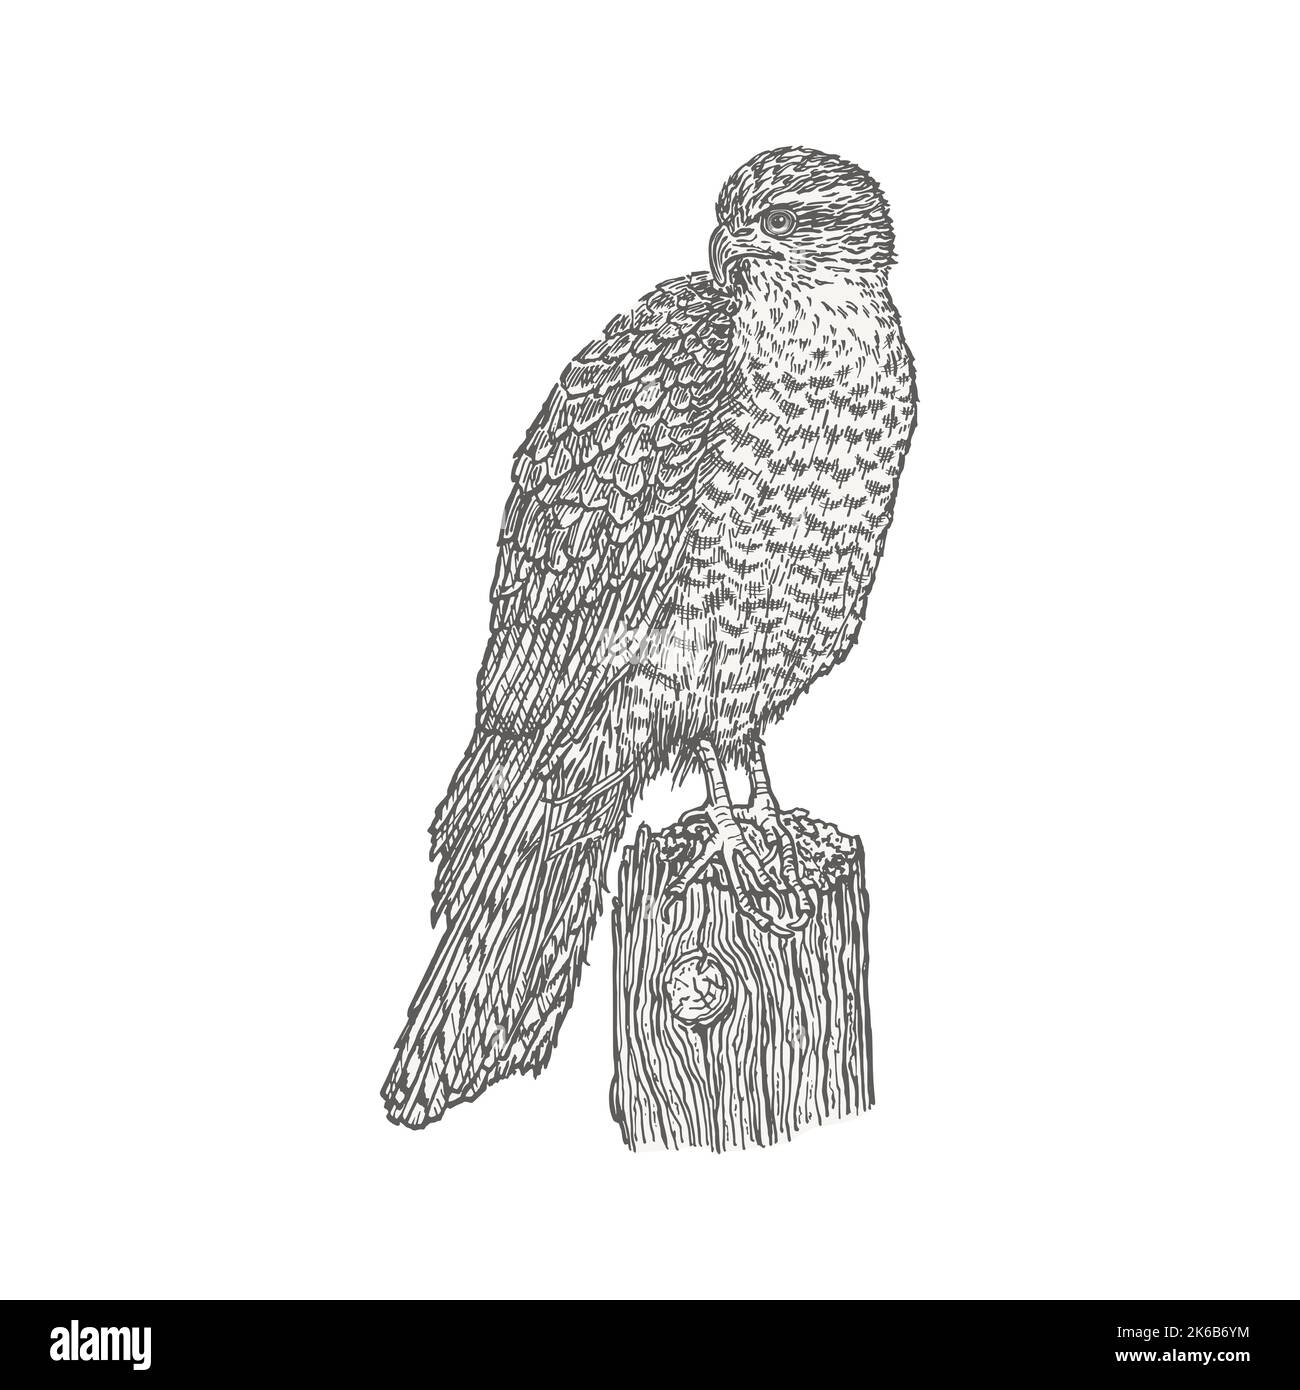 Uccello predatore in piedi su un ceppo. Disegnata a mano con contorni a penna e inchiostro. Schizzo di uccello in stile vintage. Illustrazione vettoriale. Illustrazione Vettoriale